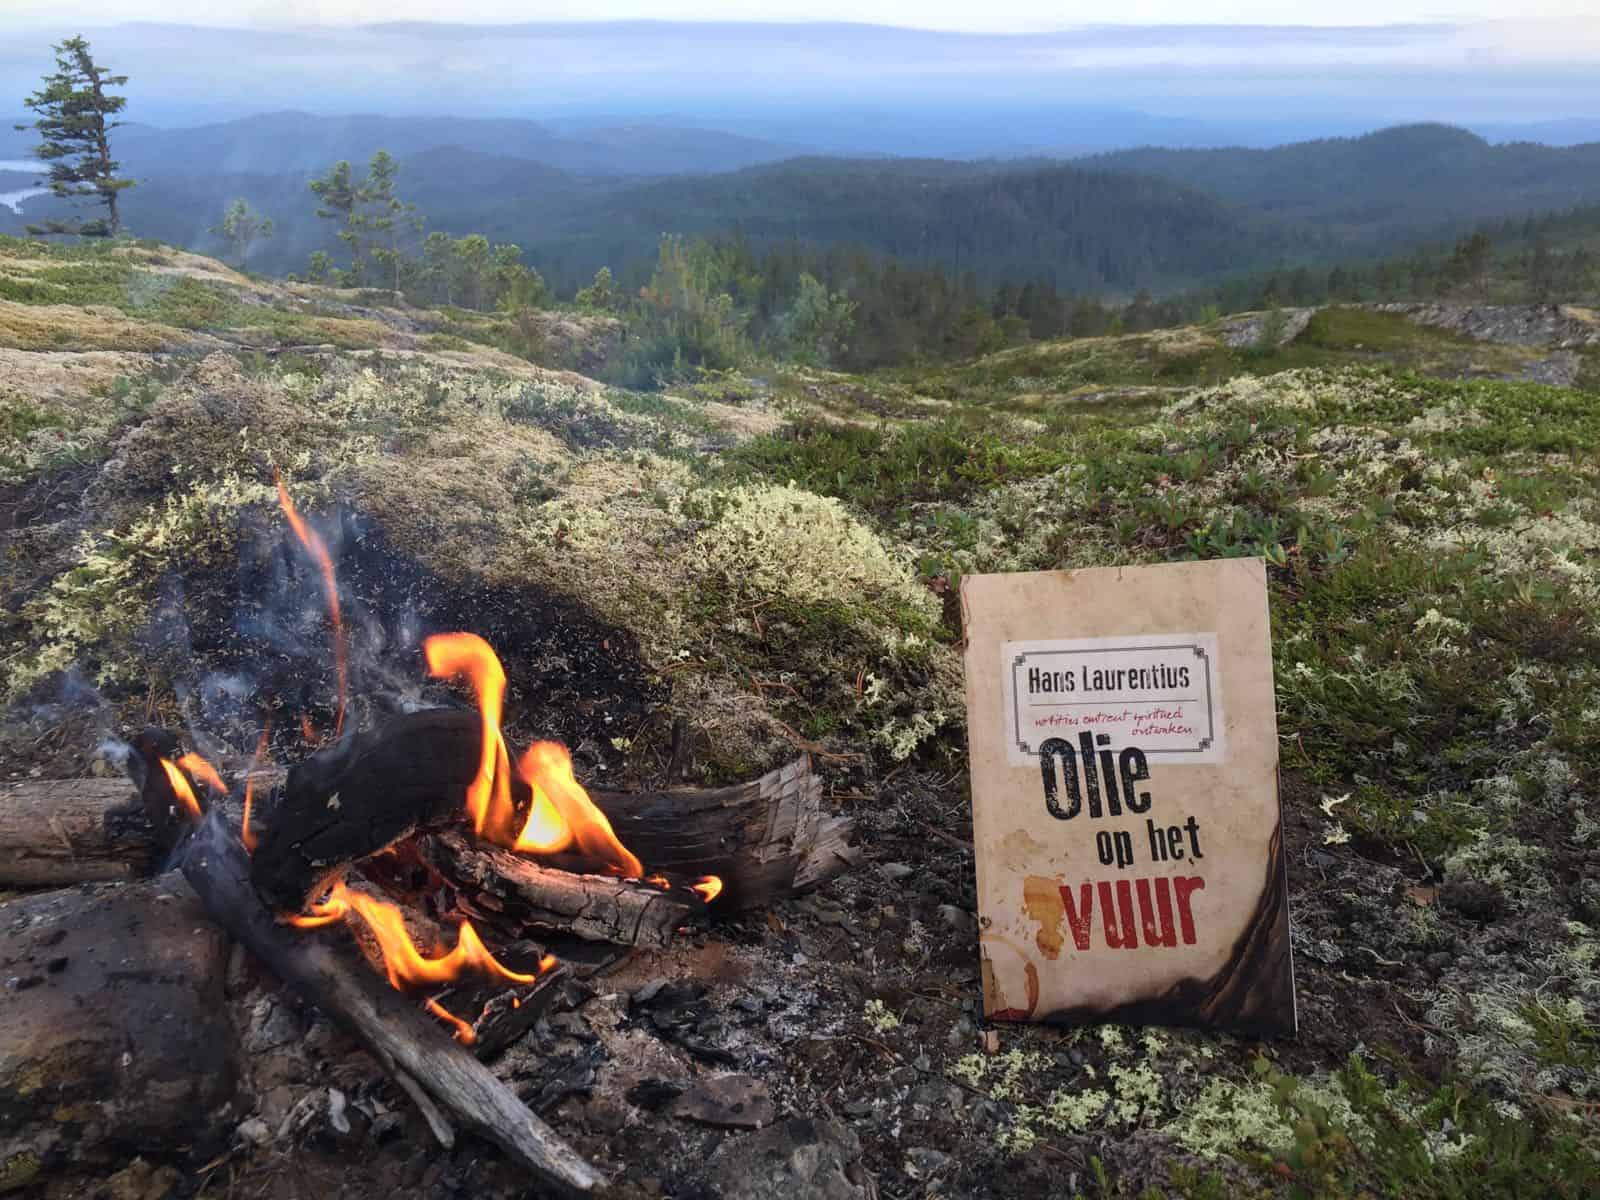 Olie op het vuur in Noorwegen